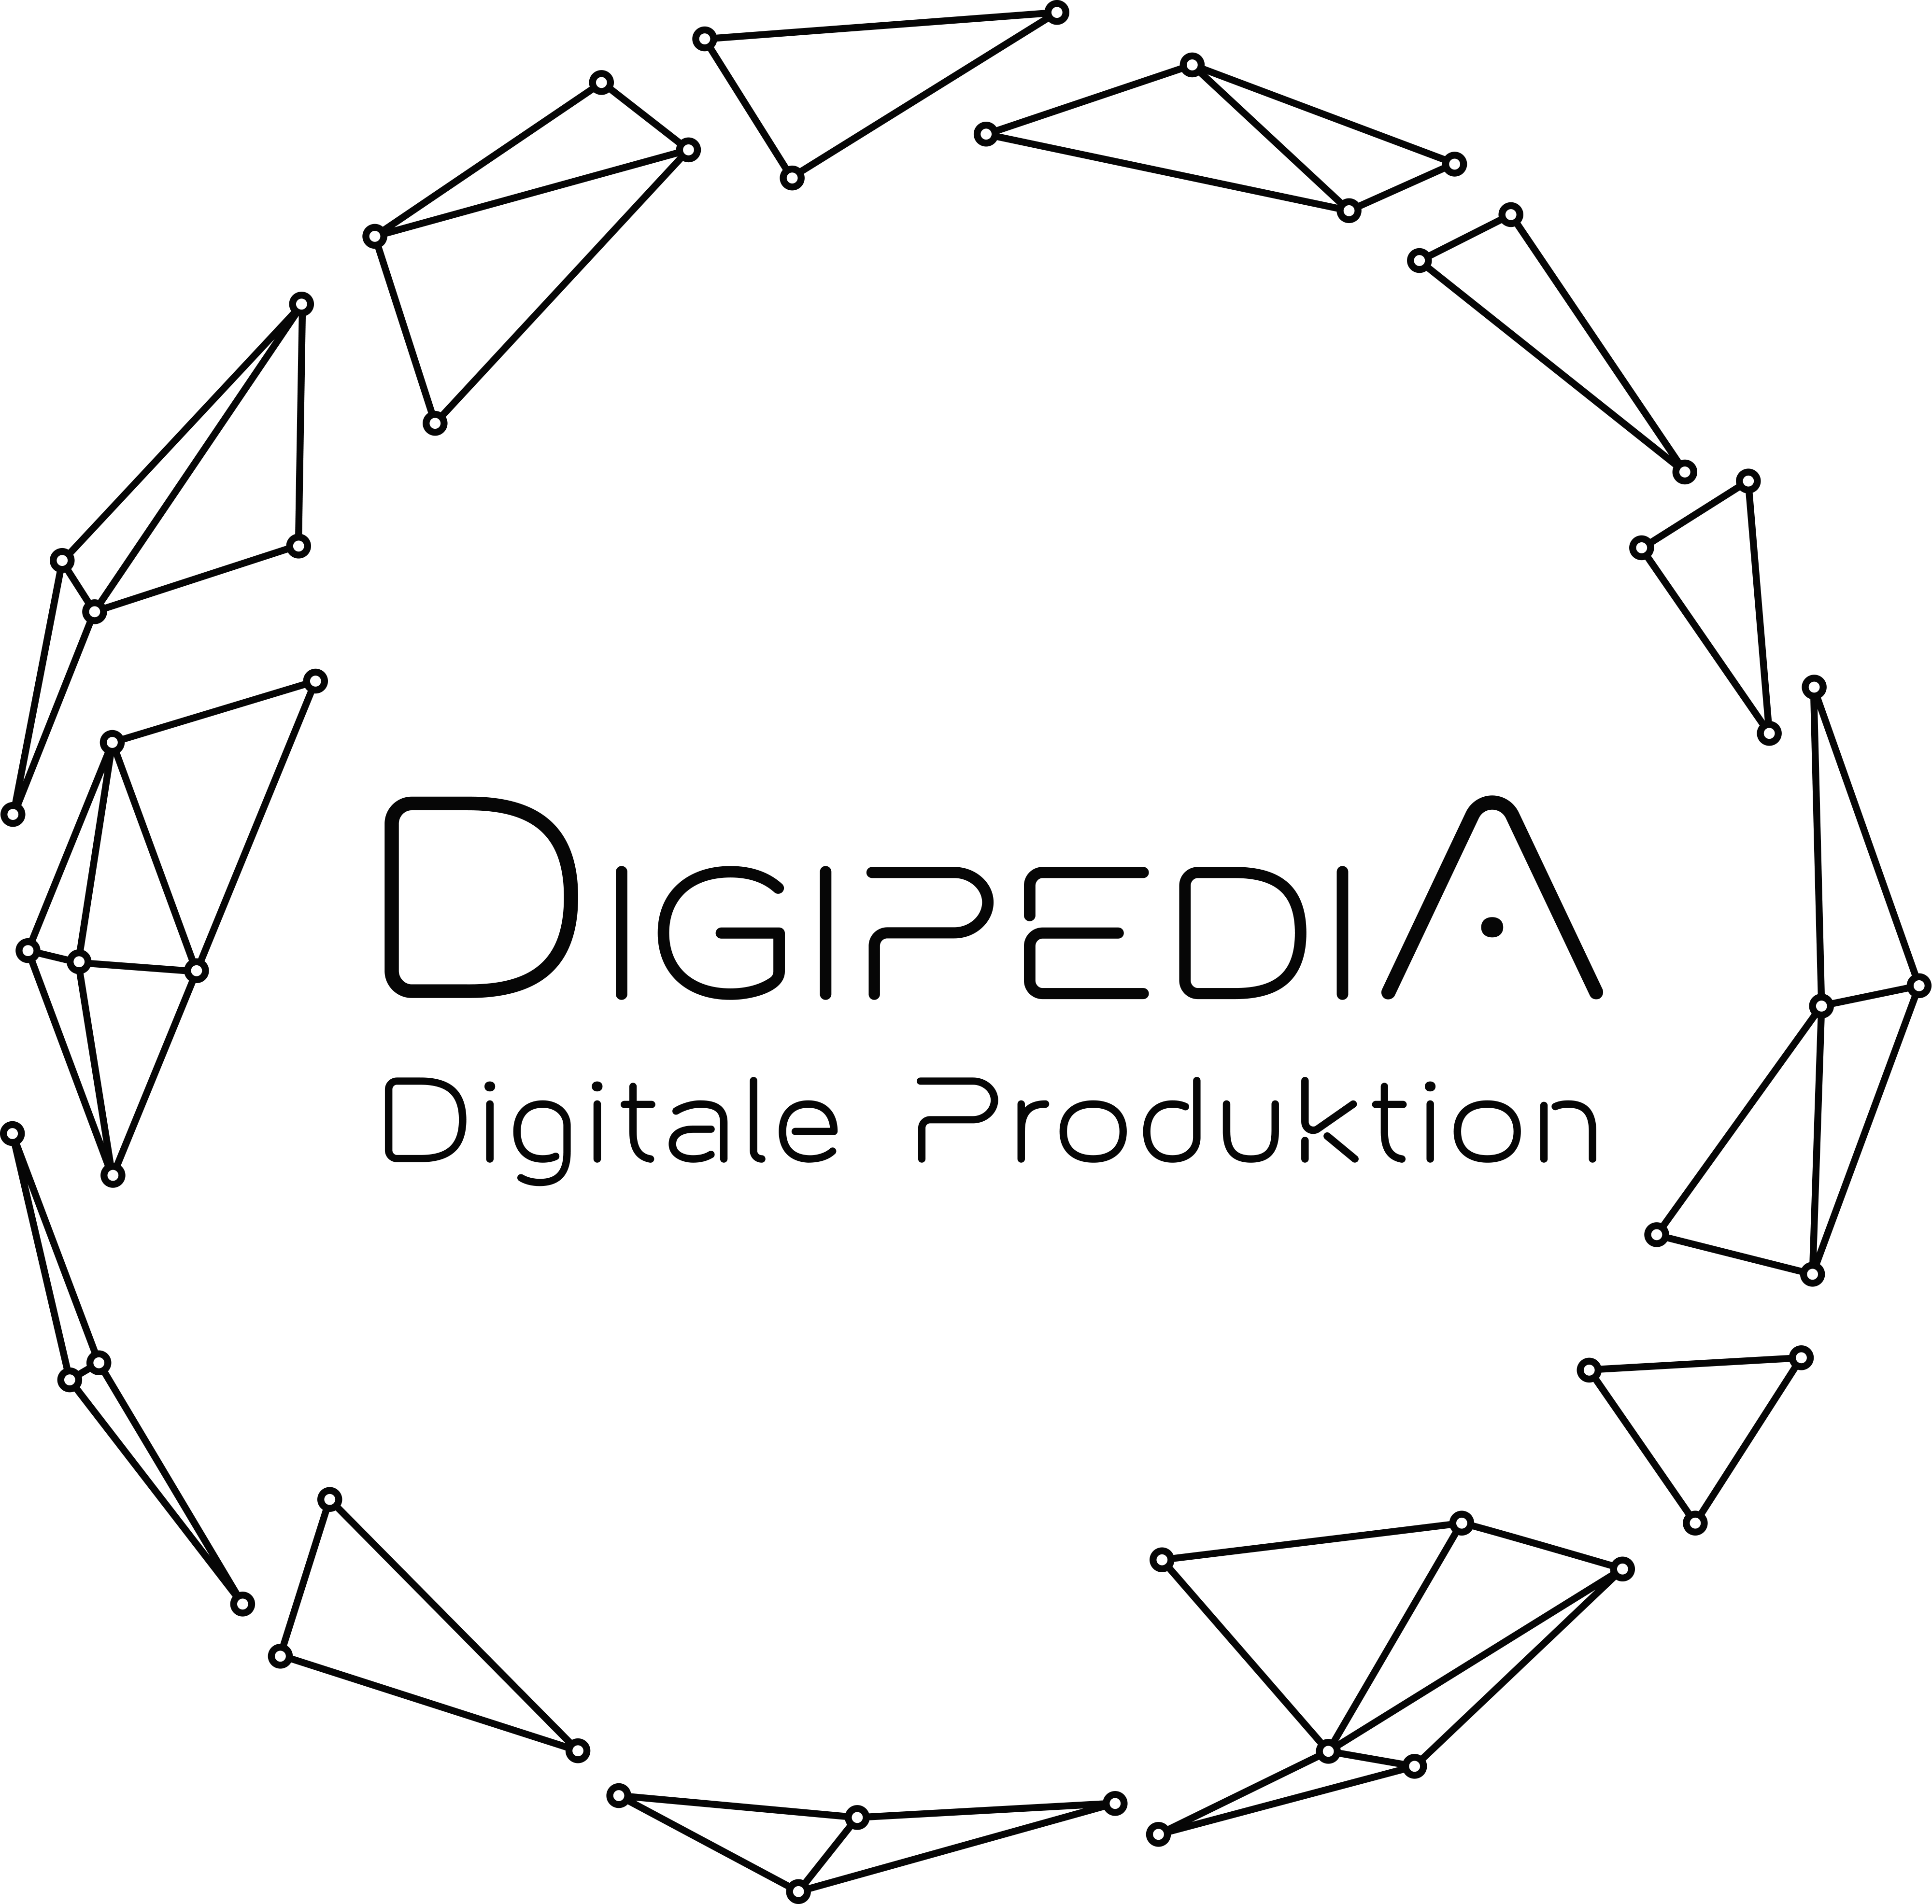 Digipedia